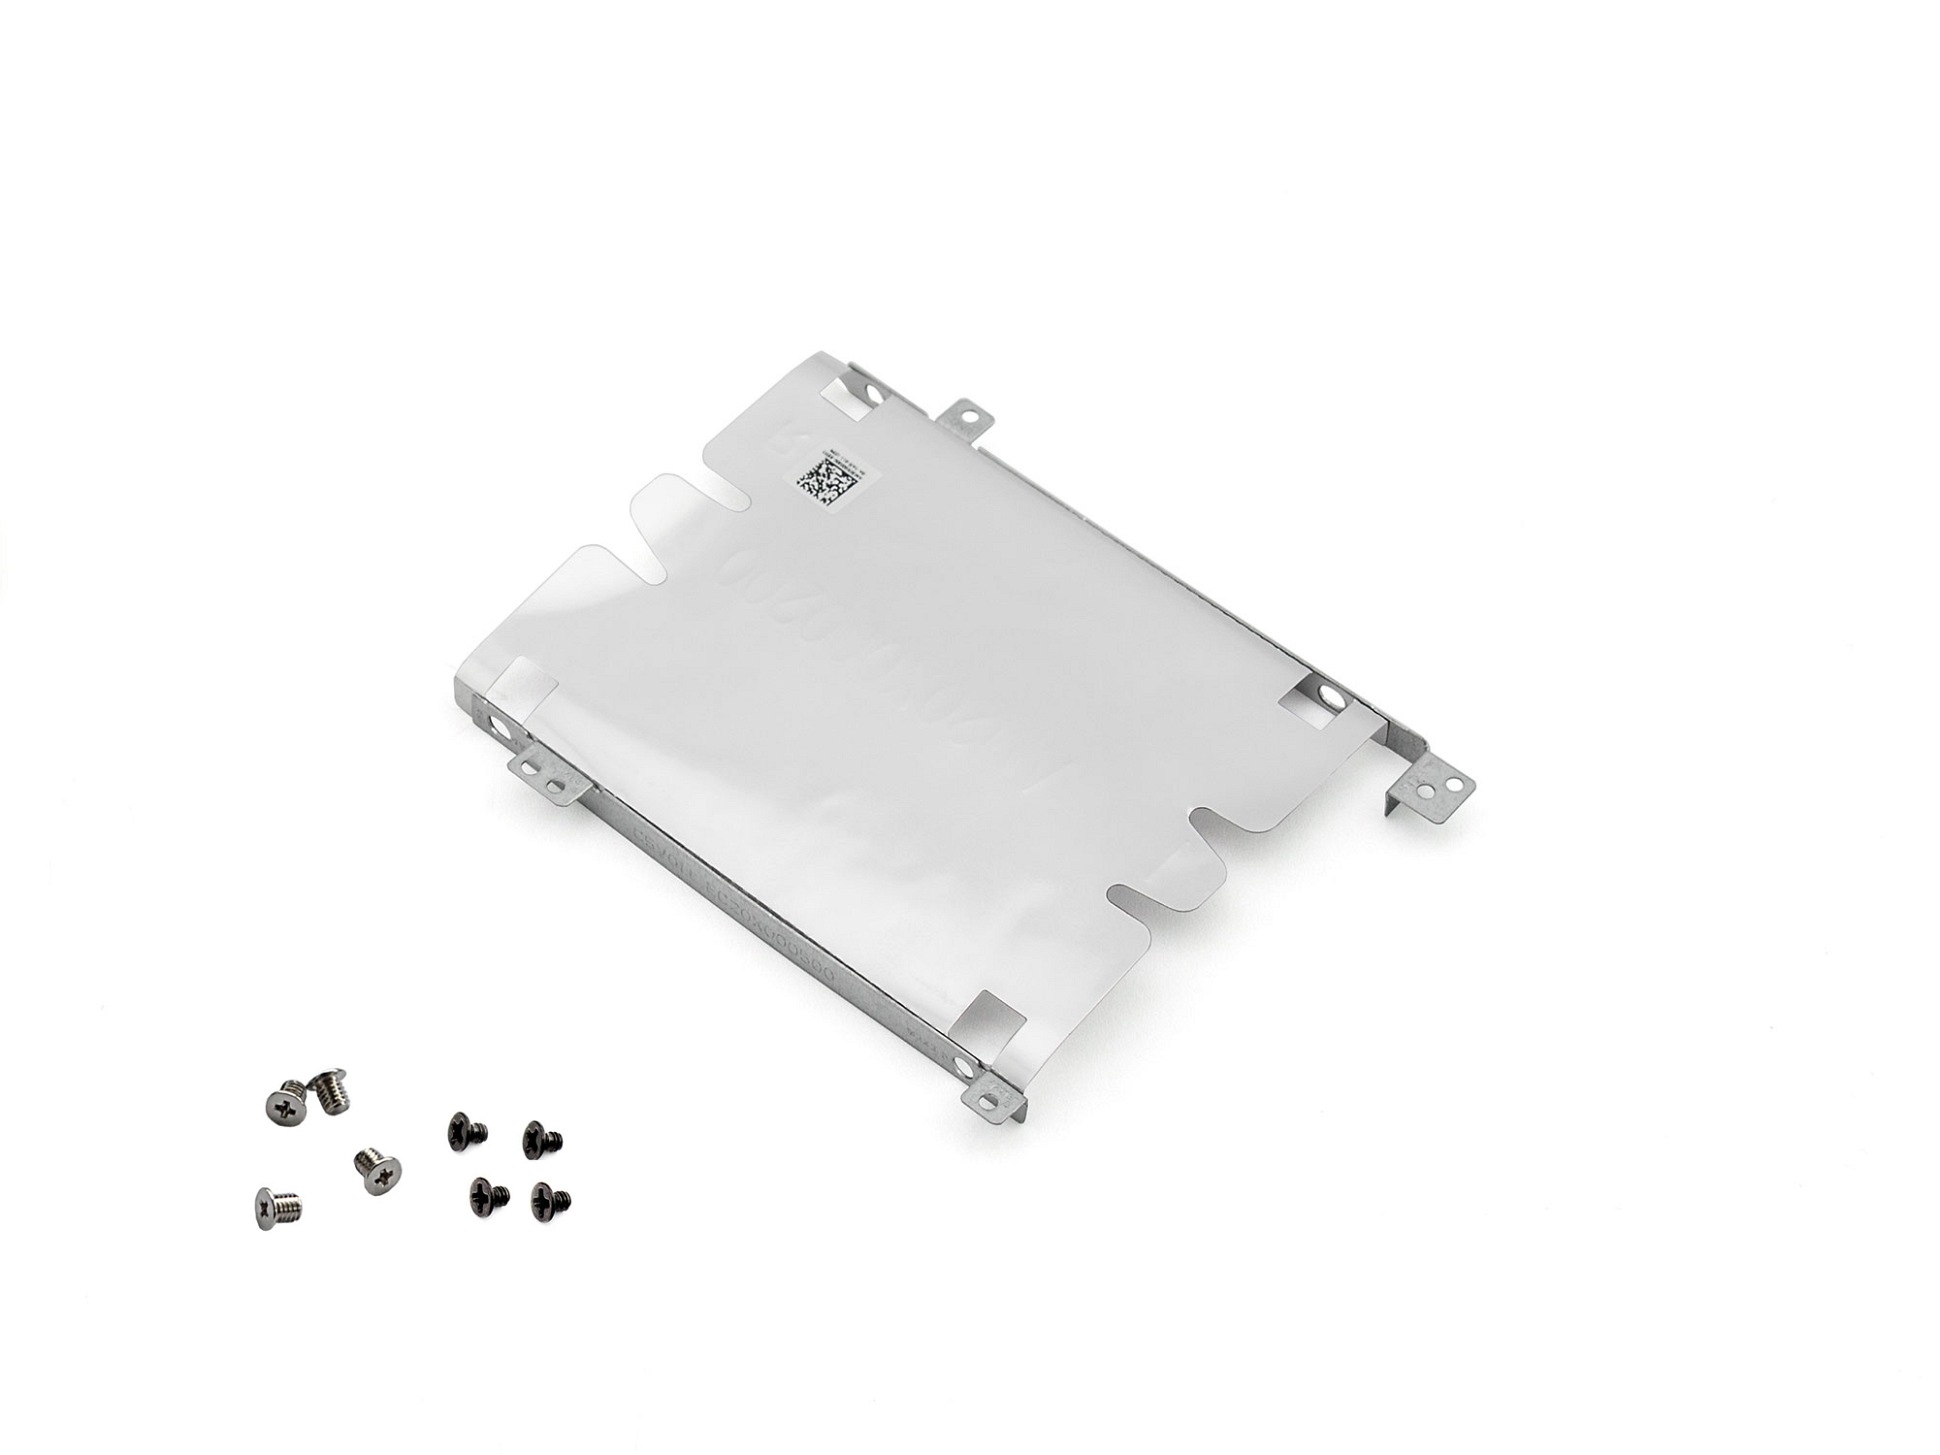 Festplatten-Einbaurahmen für den 2. Festplatten Schacht inkl. Schrauben Original für Acer Nitro 5 (AN515-51)